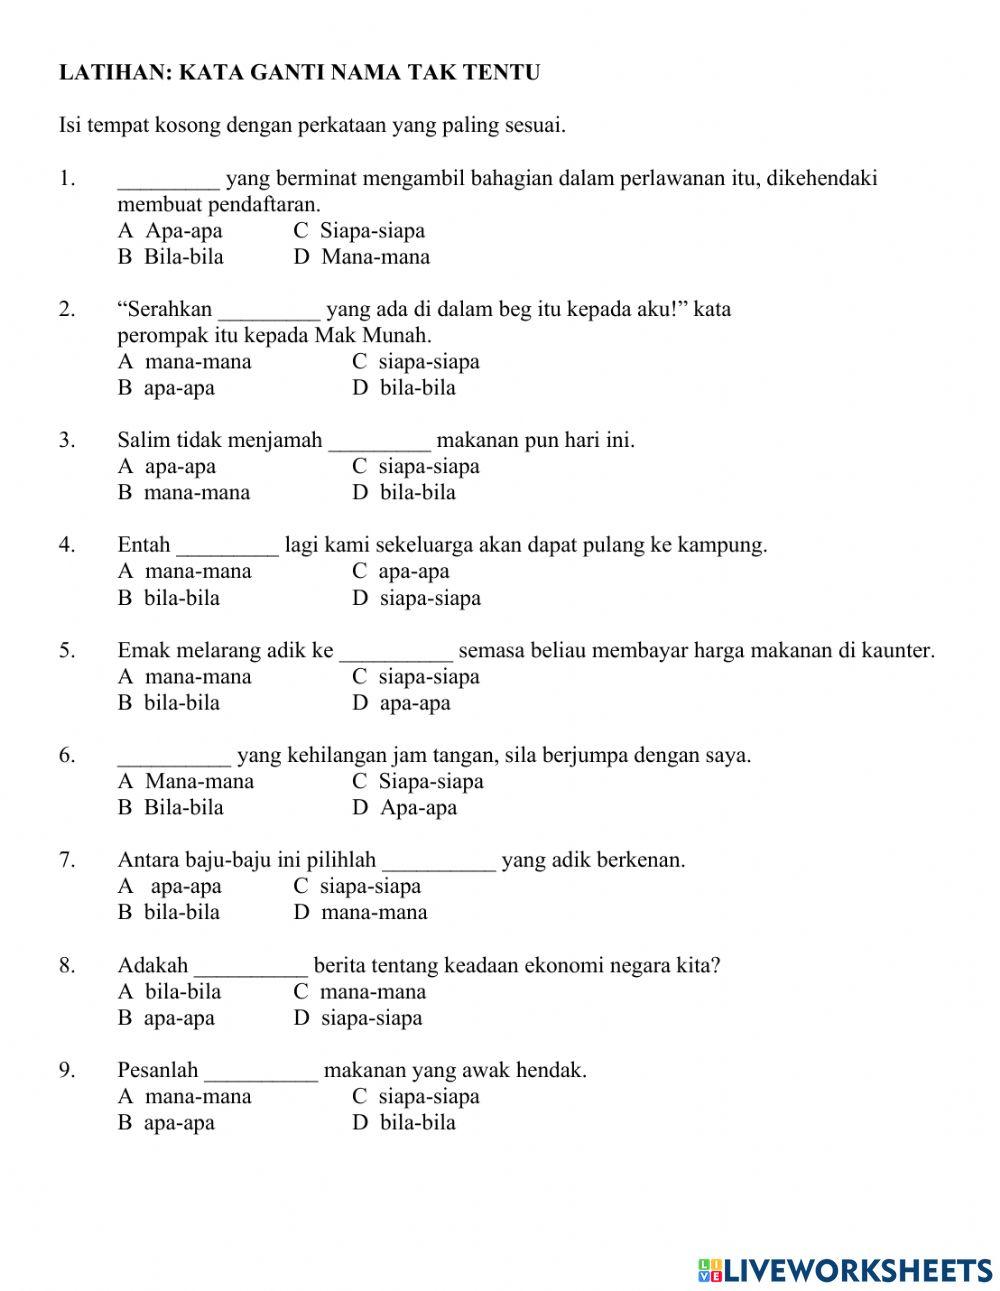 Latihan Kata Ganti Nama Tak Tentu worksheet | Live Worksheets